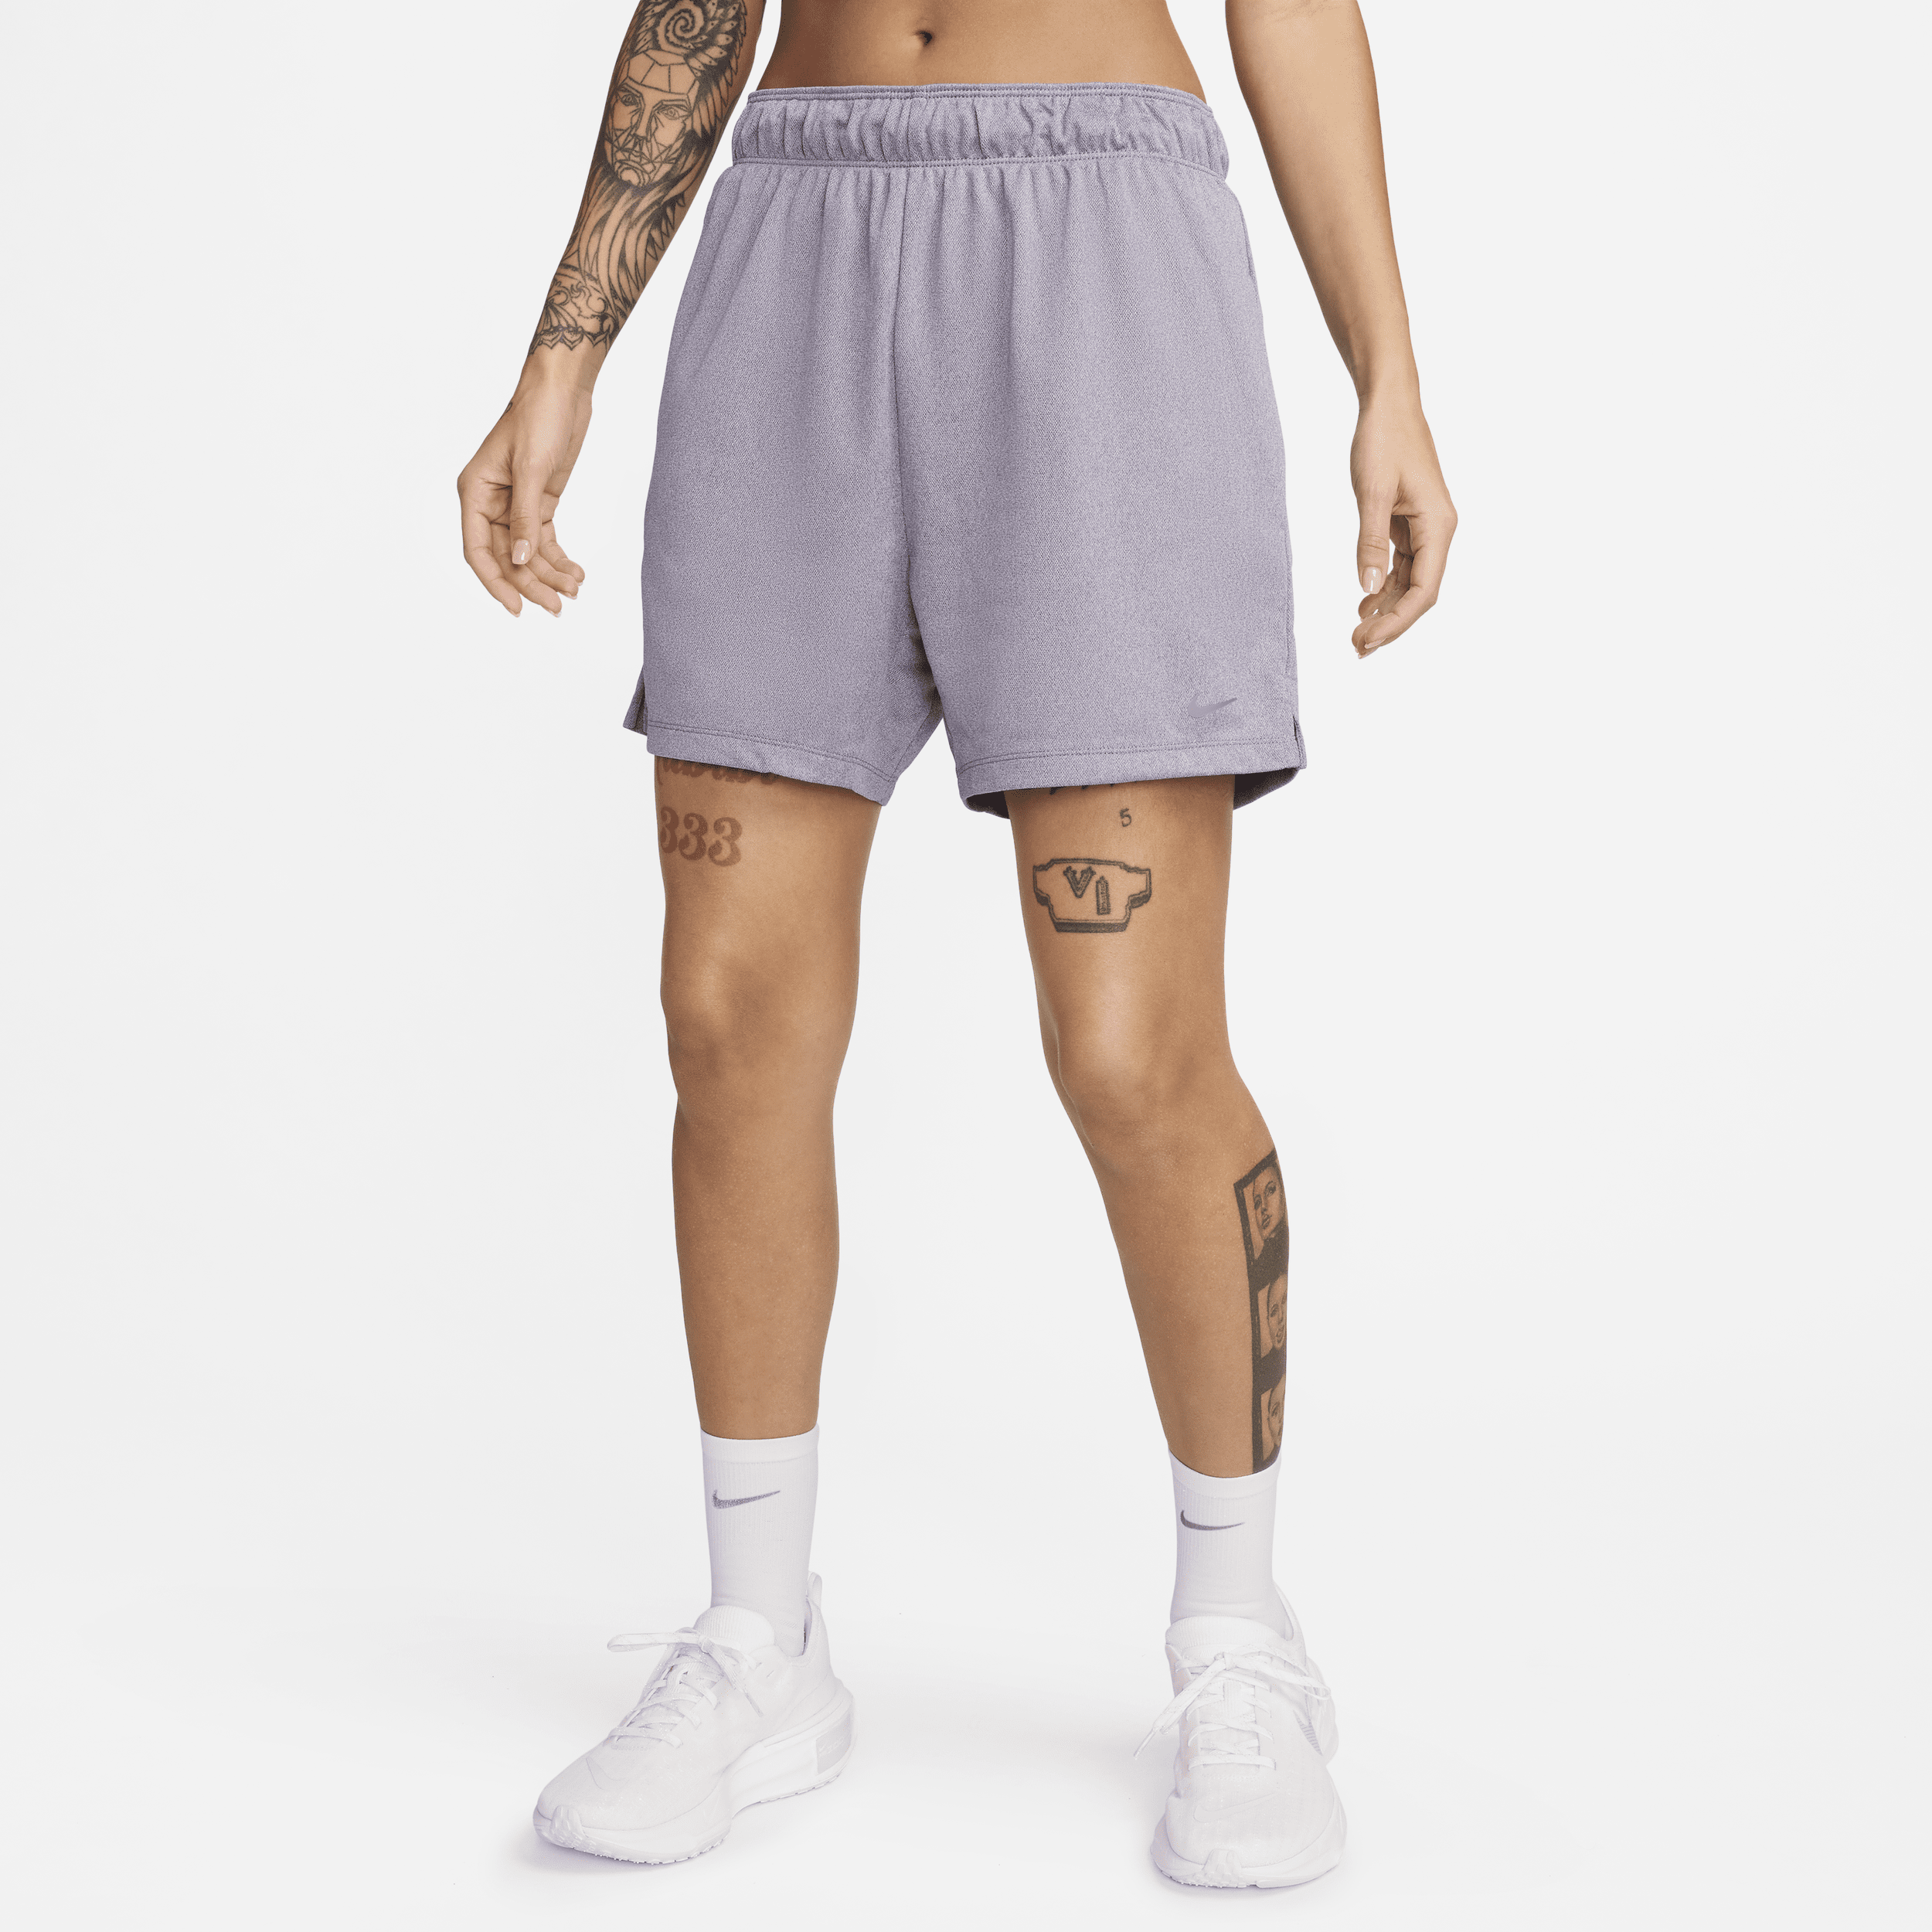 Nike Attack Pantalón corto Dri-FIT sin forro de talle medio y 13 cm - Mujer - Morado